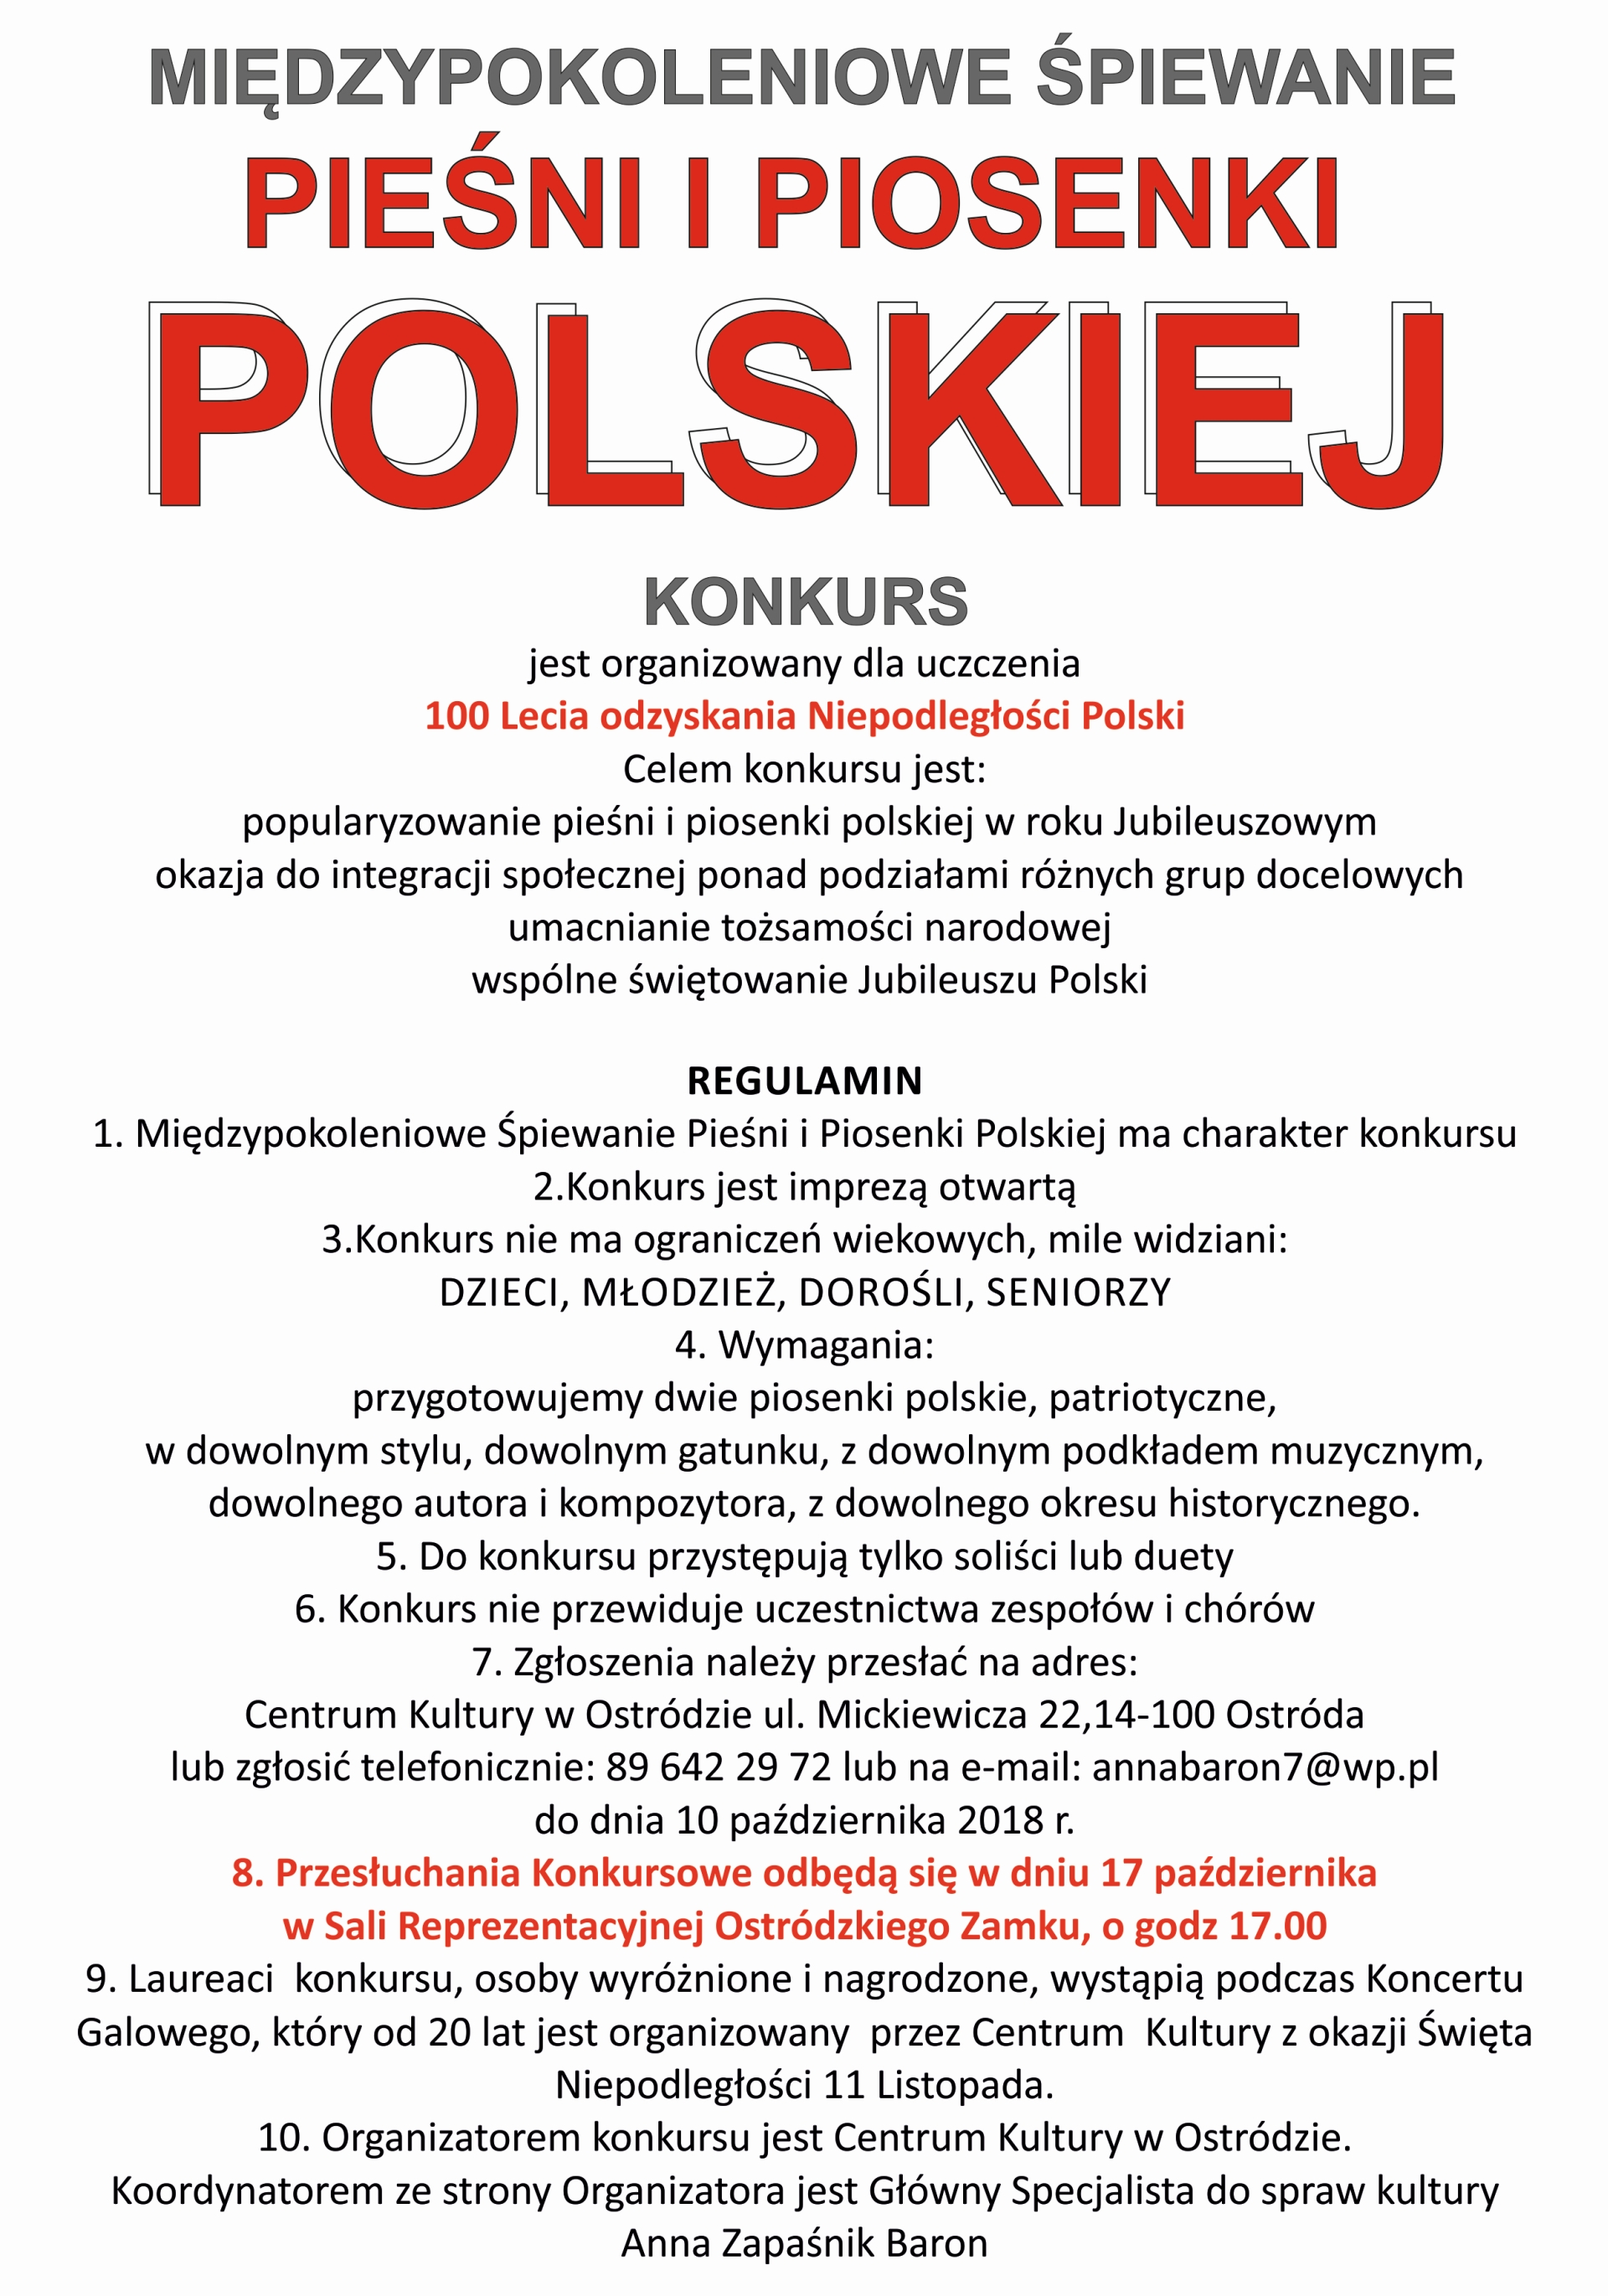 Międzypokoleniowe Śpiewanie Pieśni i Piosenki Polskiej z okazji 100 lecia Odzyskania Niepodległości Polski